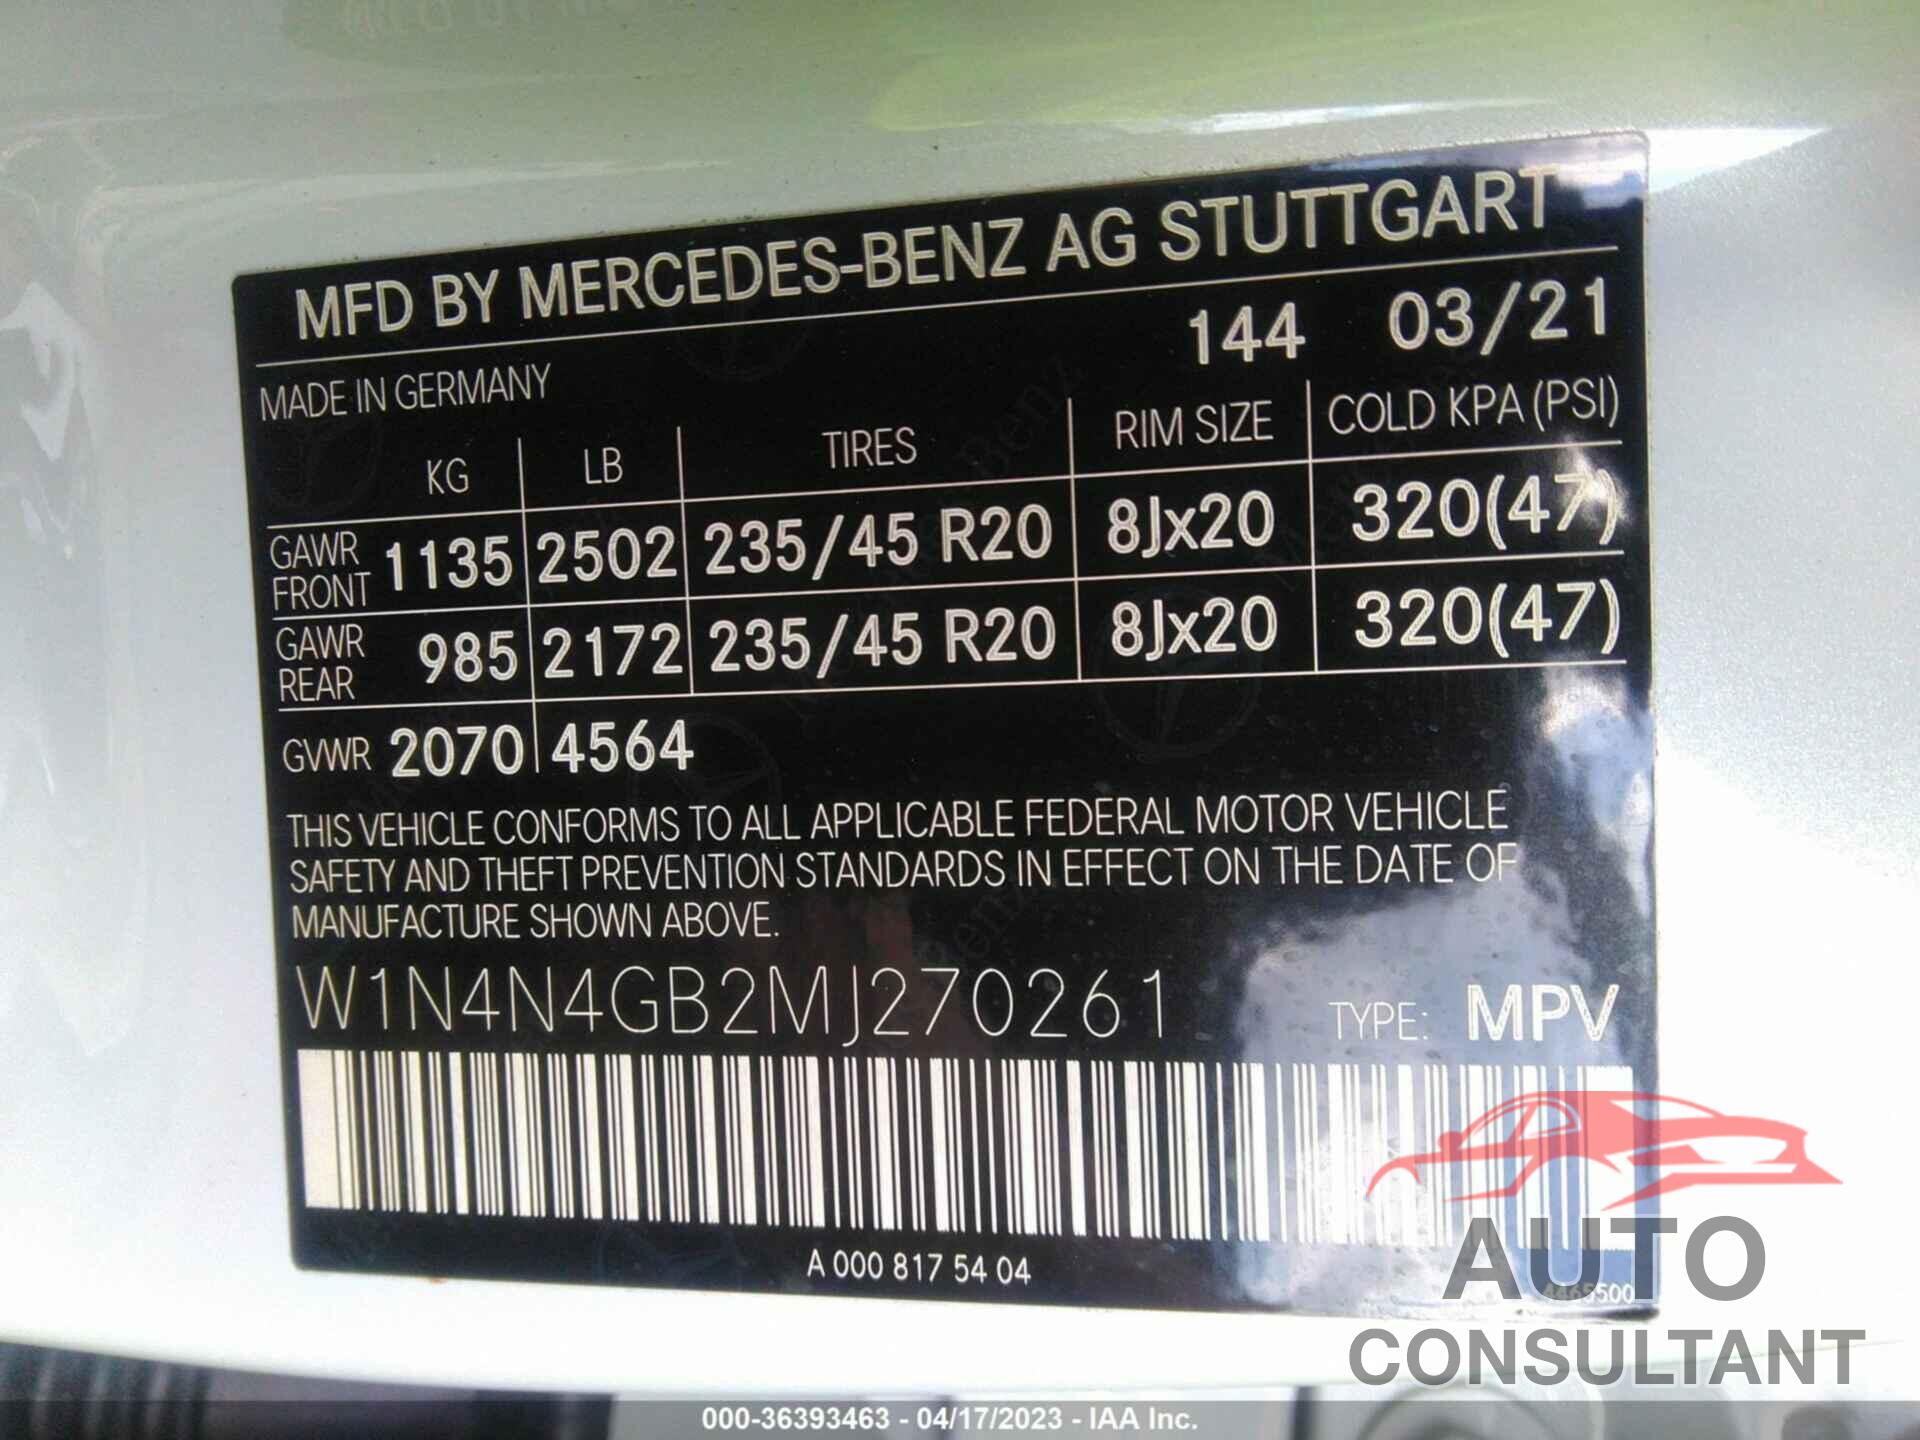 MERCEDES-BENZ GLA 2021 - W1N4N4GB2MJ270261